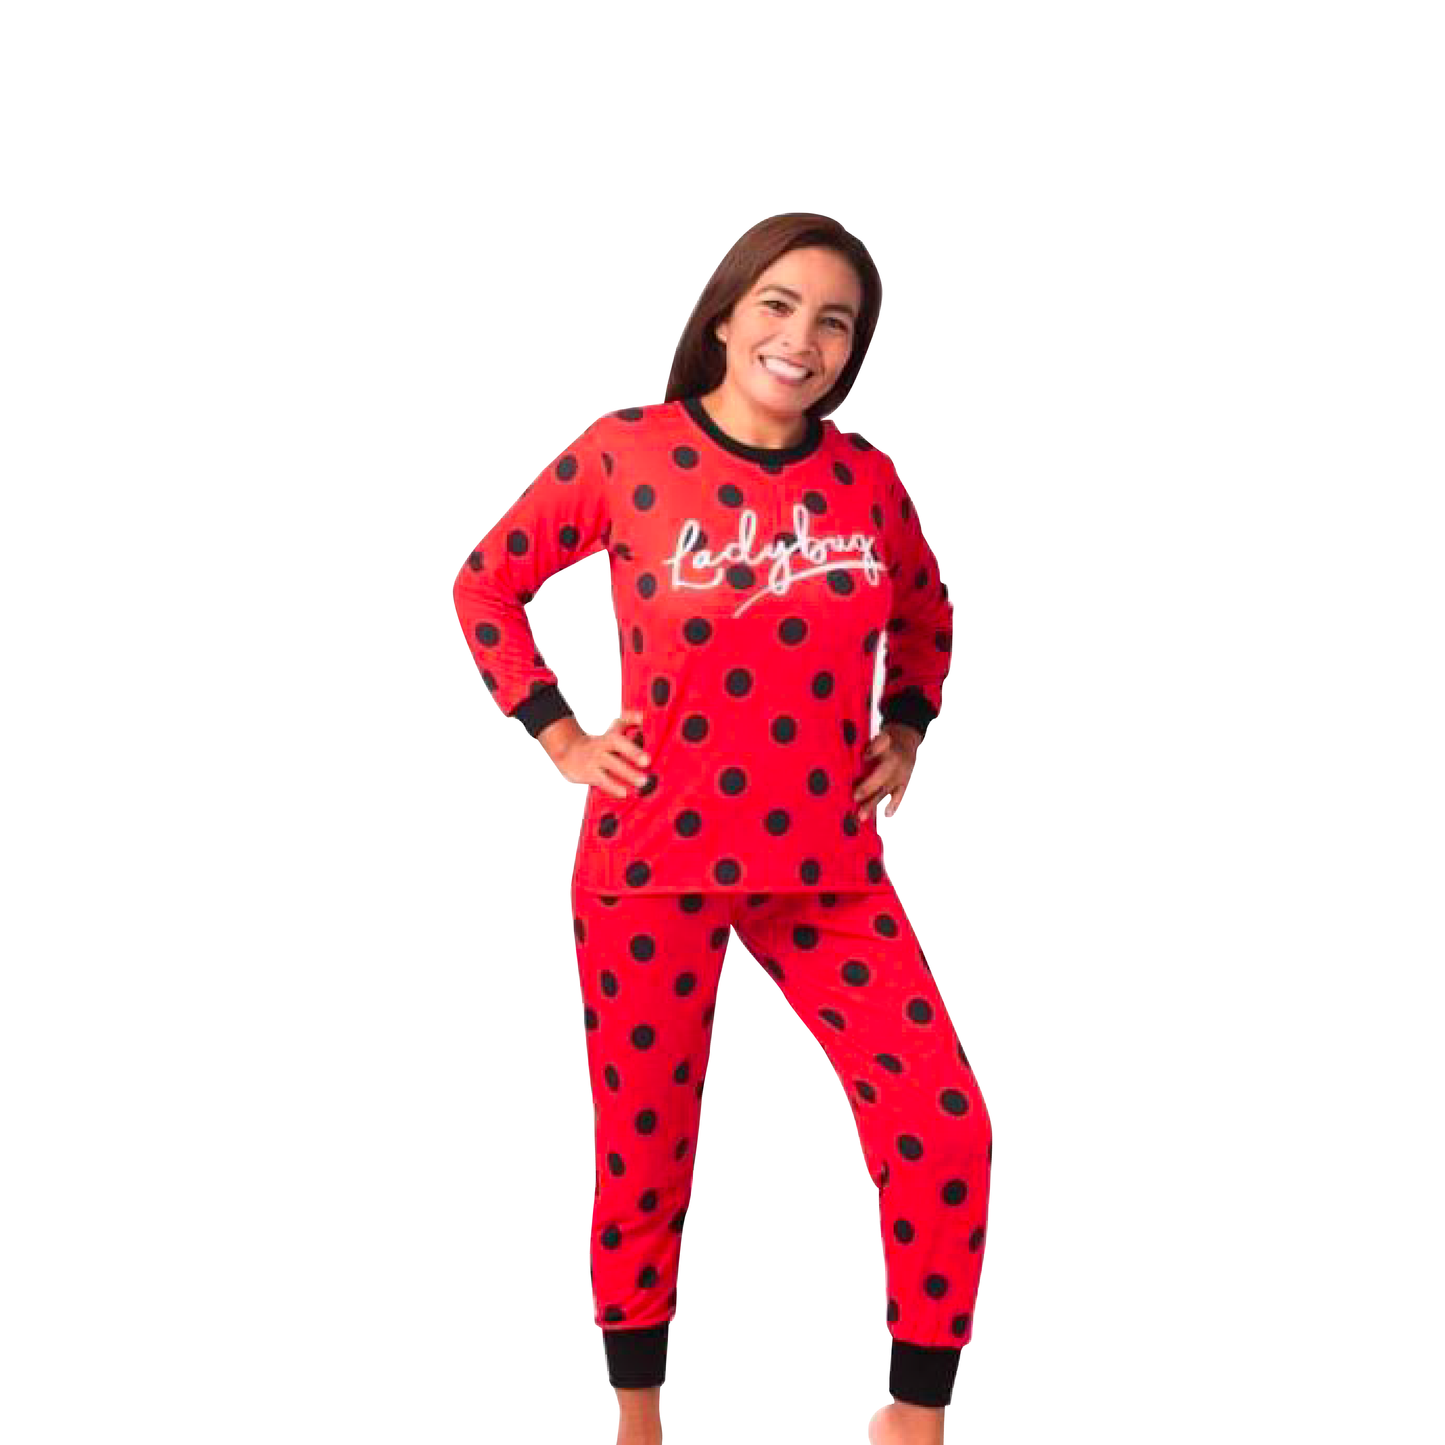 Pijama Traje Ladybug